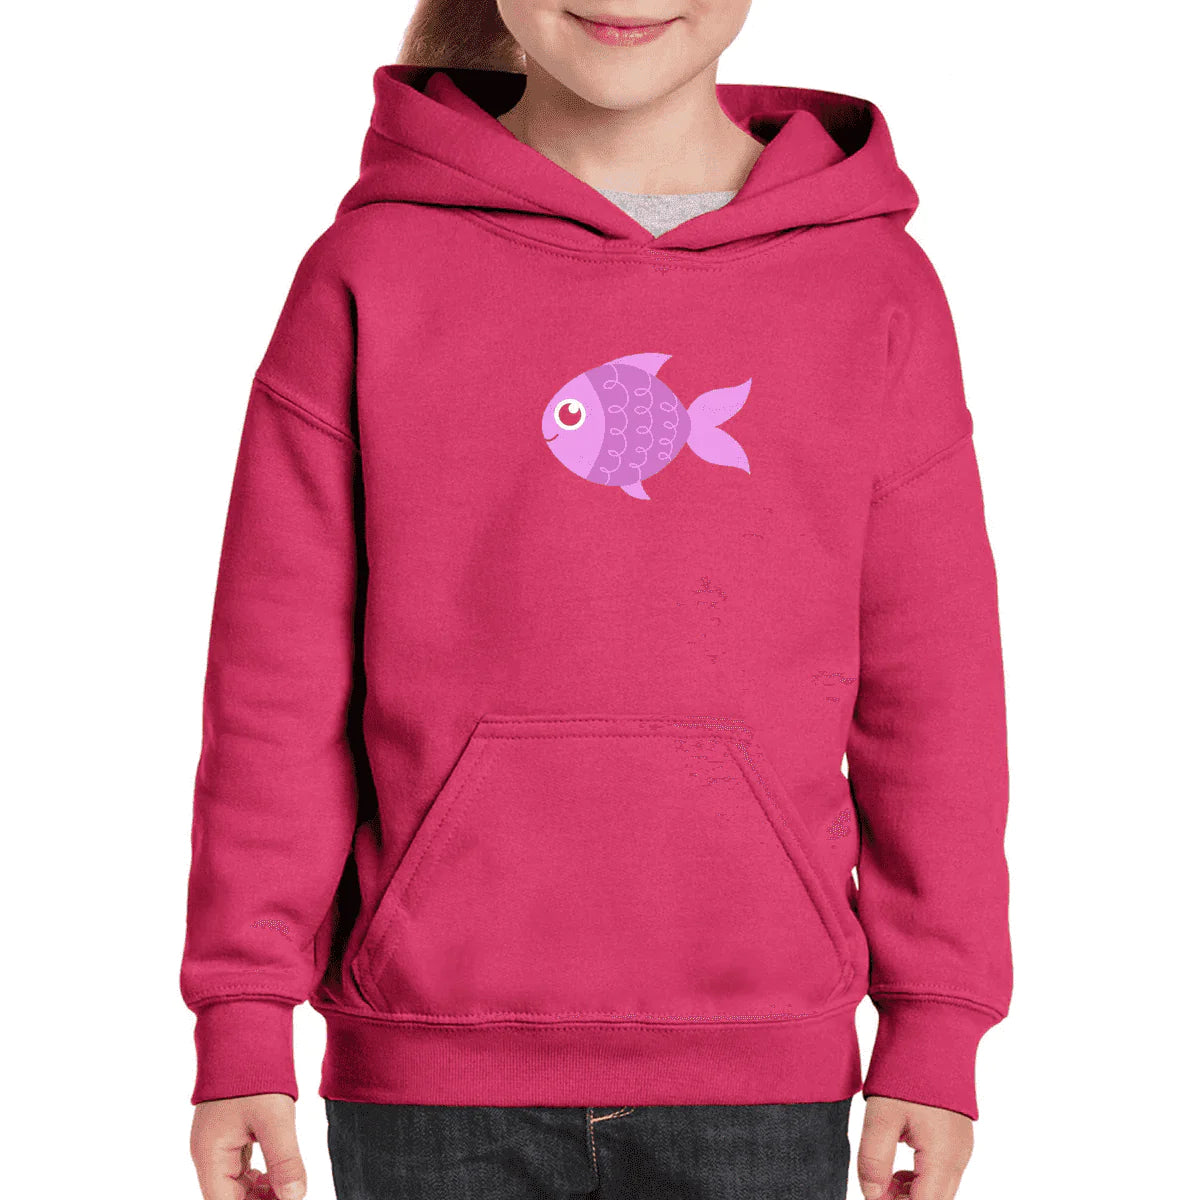 Cute Fish Hoodie For Kids Girls – Nurse Gifts